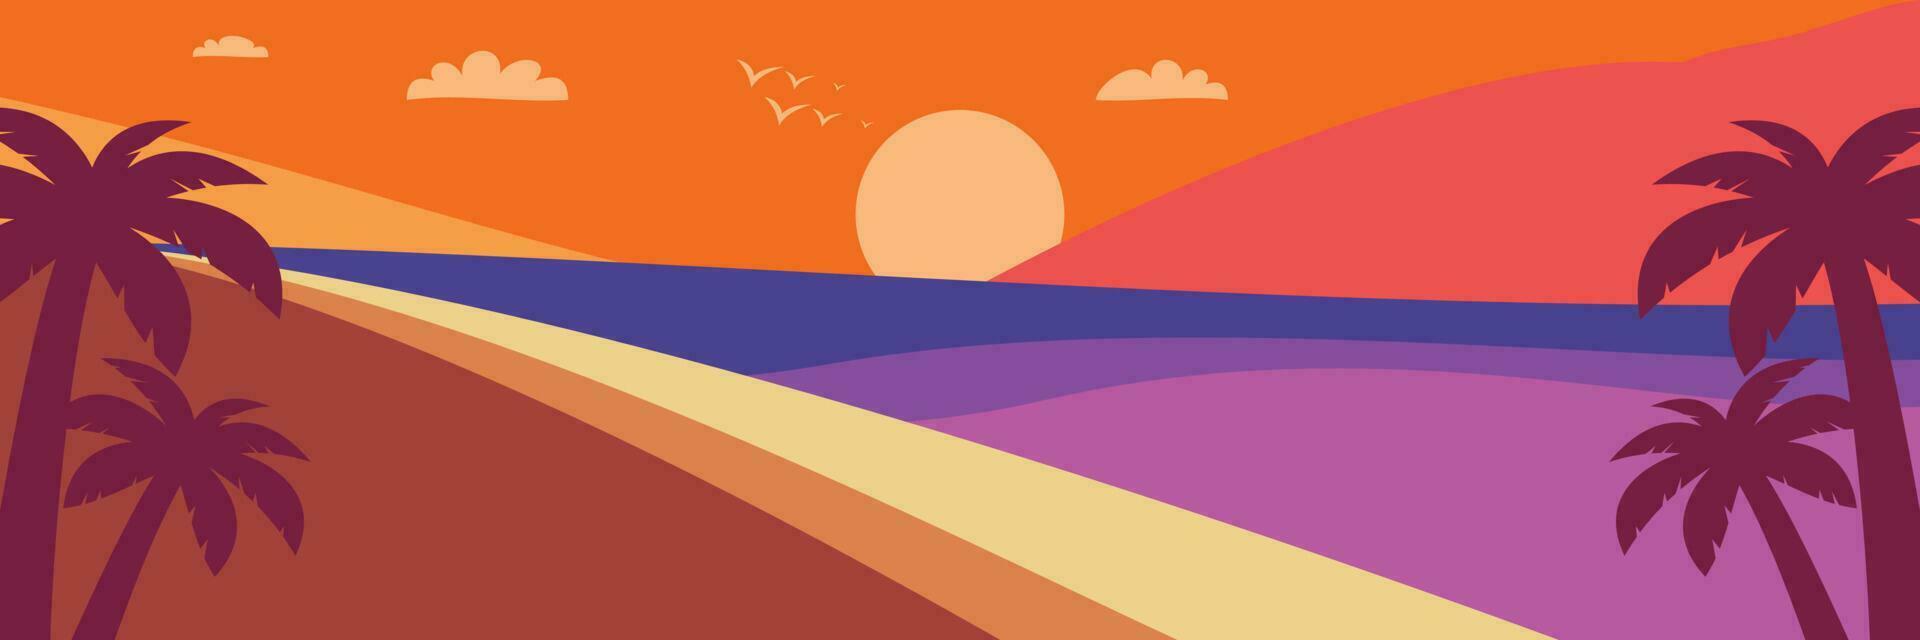 kleurrijk zomer achtergrond met zonsondergang tinten en palm boom pictogrammen. vector illustratie voor promotionele spandoeken, groet kaarten, affiches, sociaal media en web.